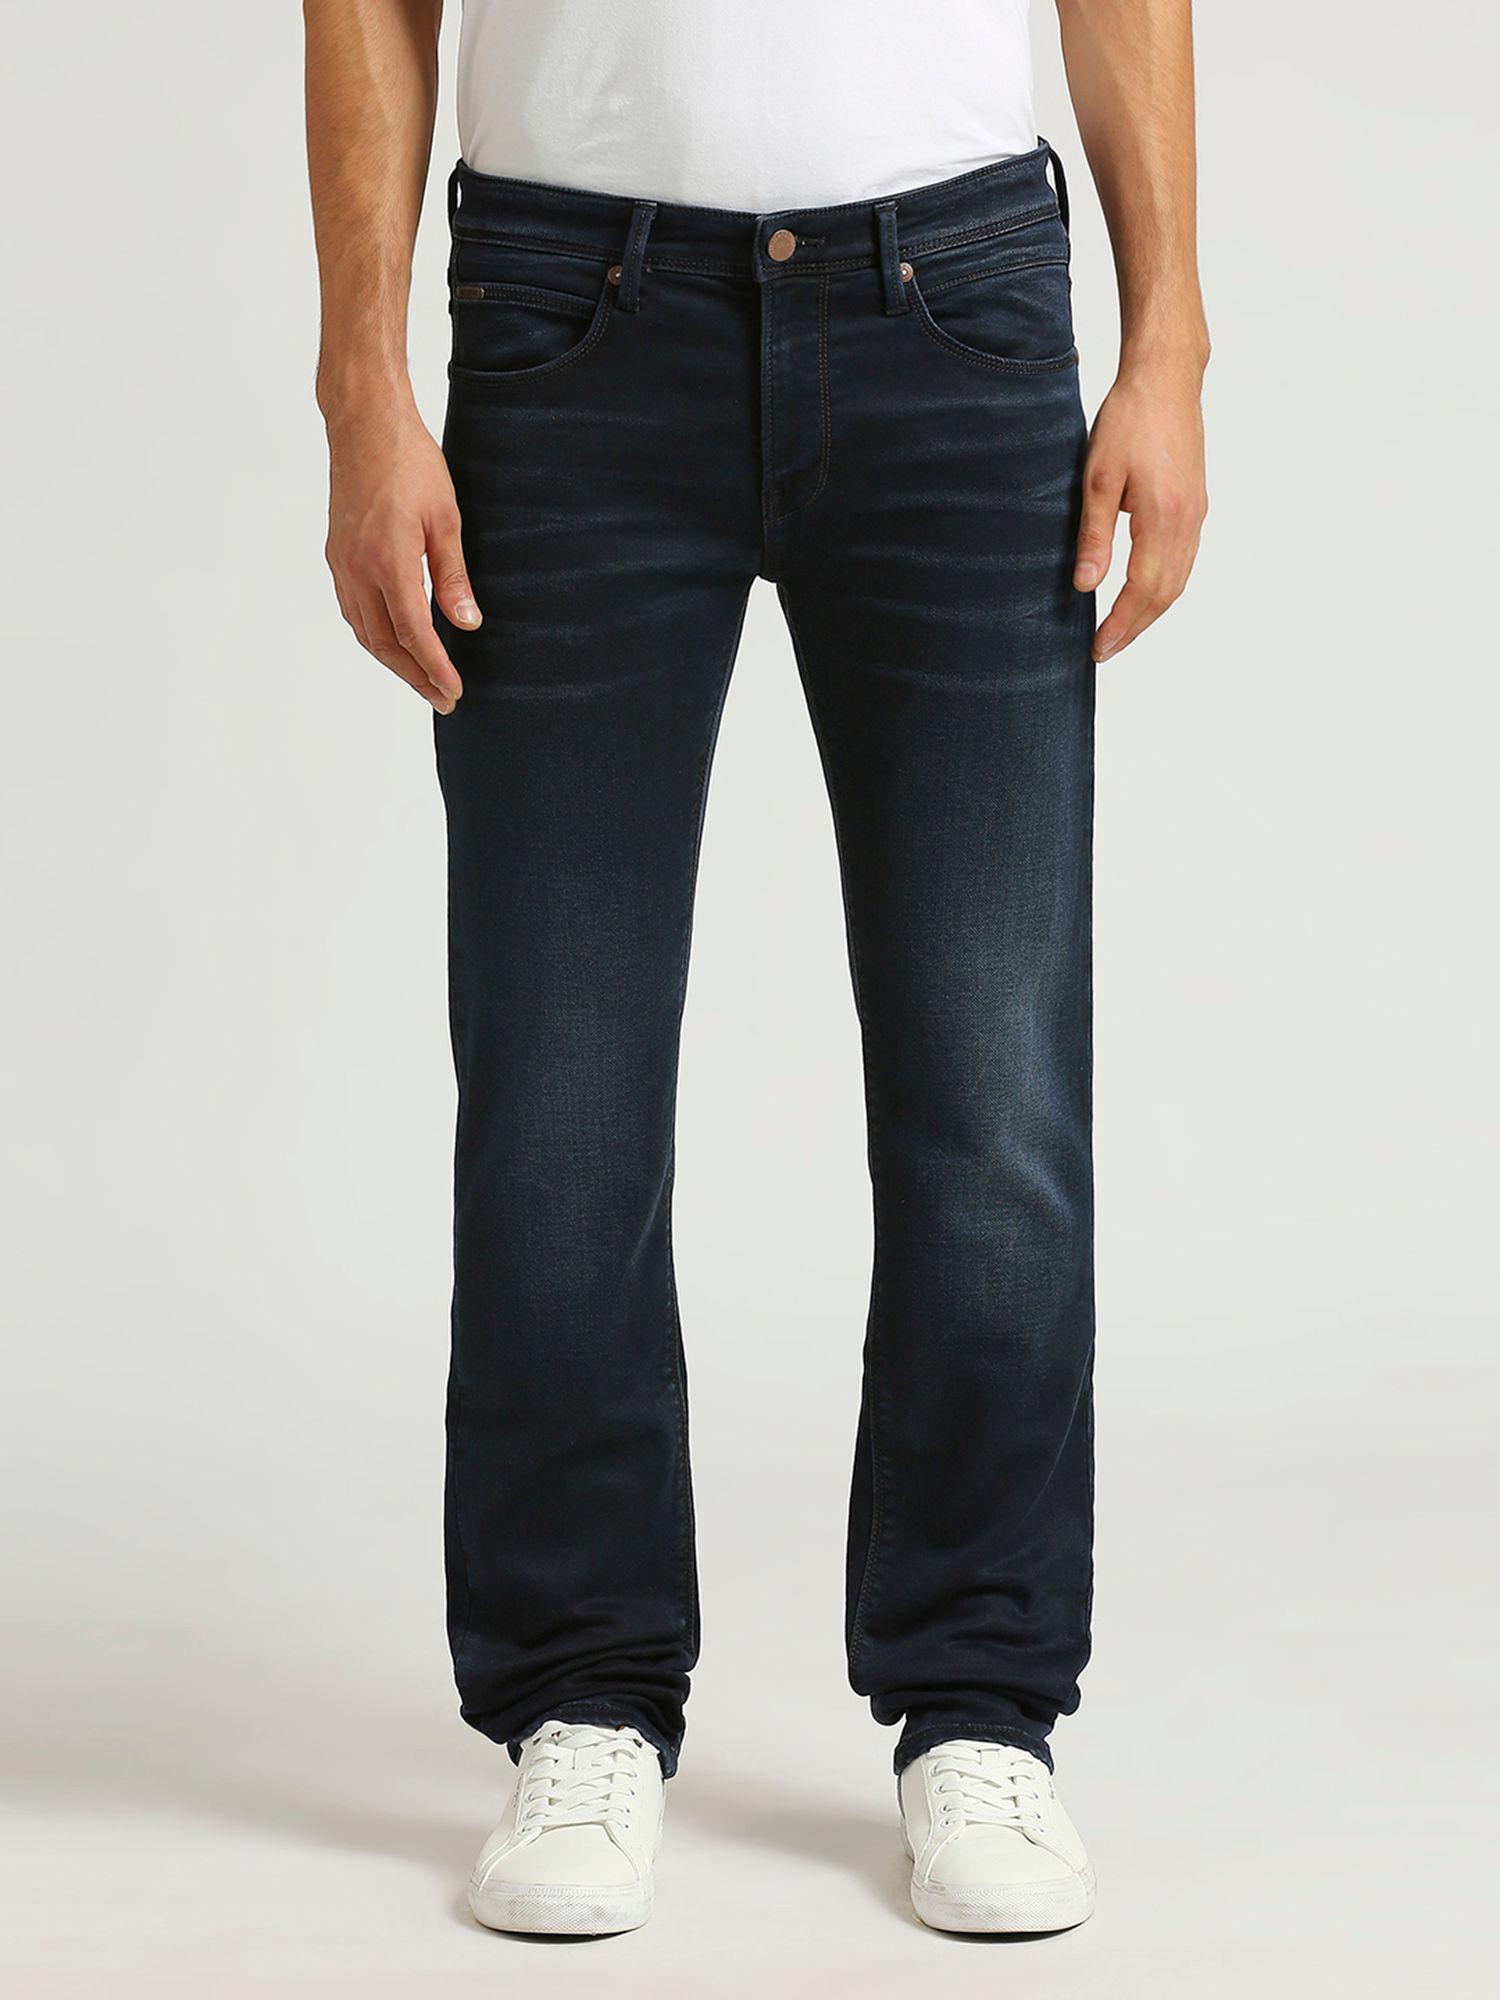 vapour-slim-fit-mid-waist-jeans